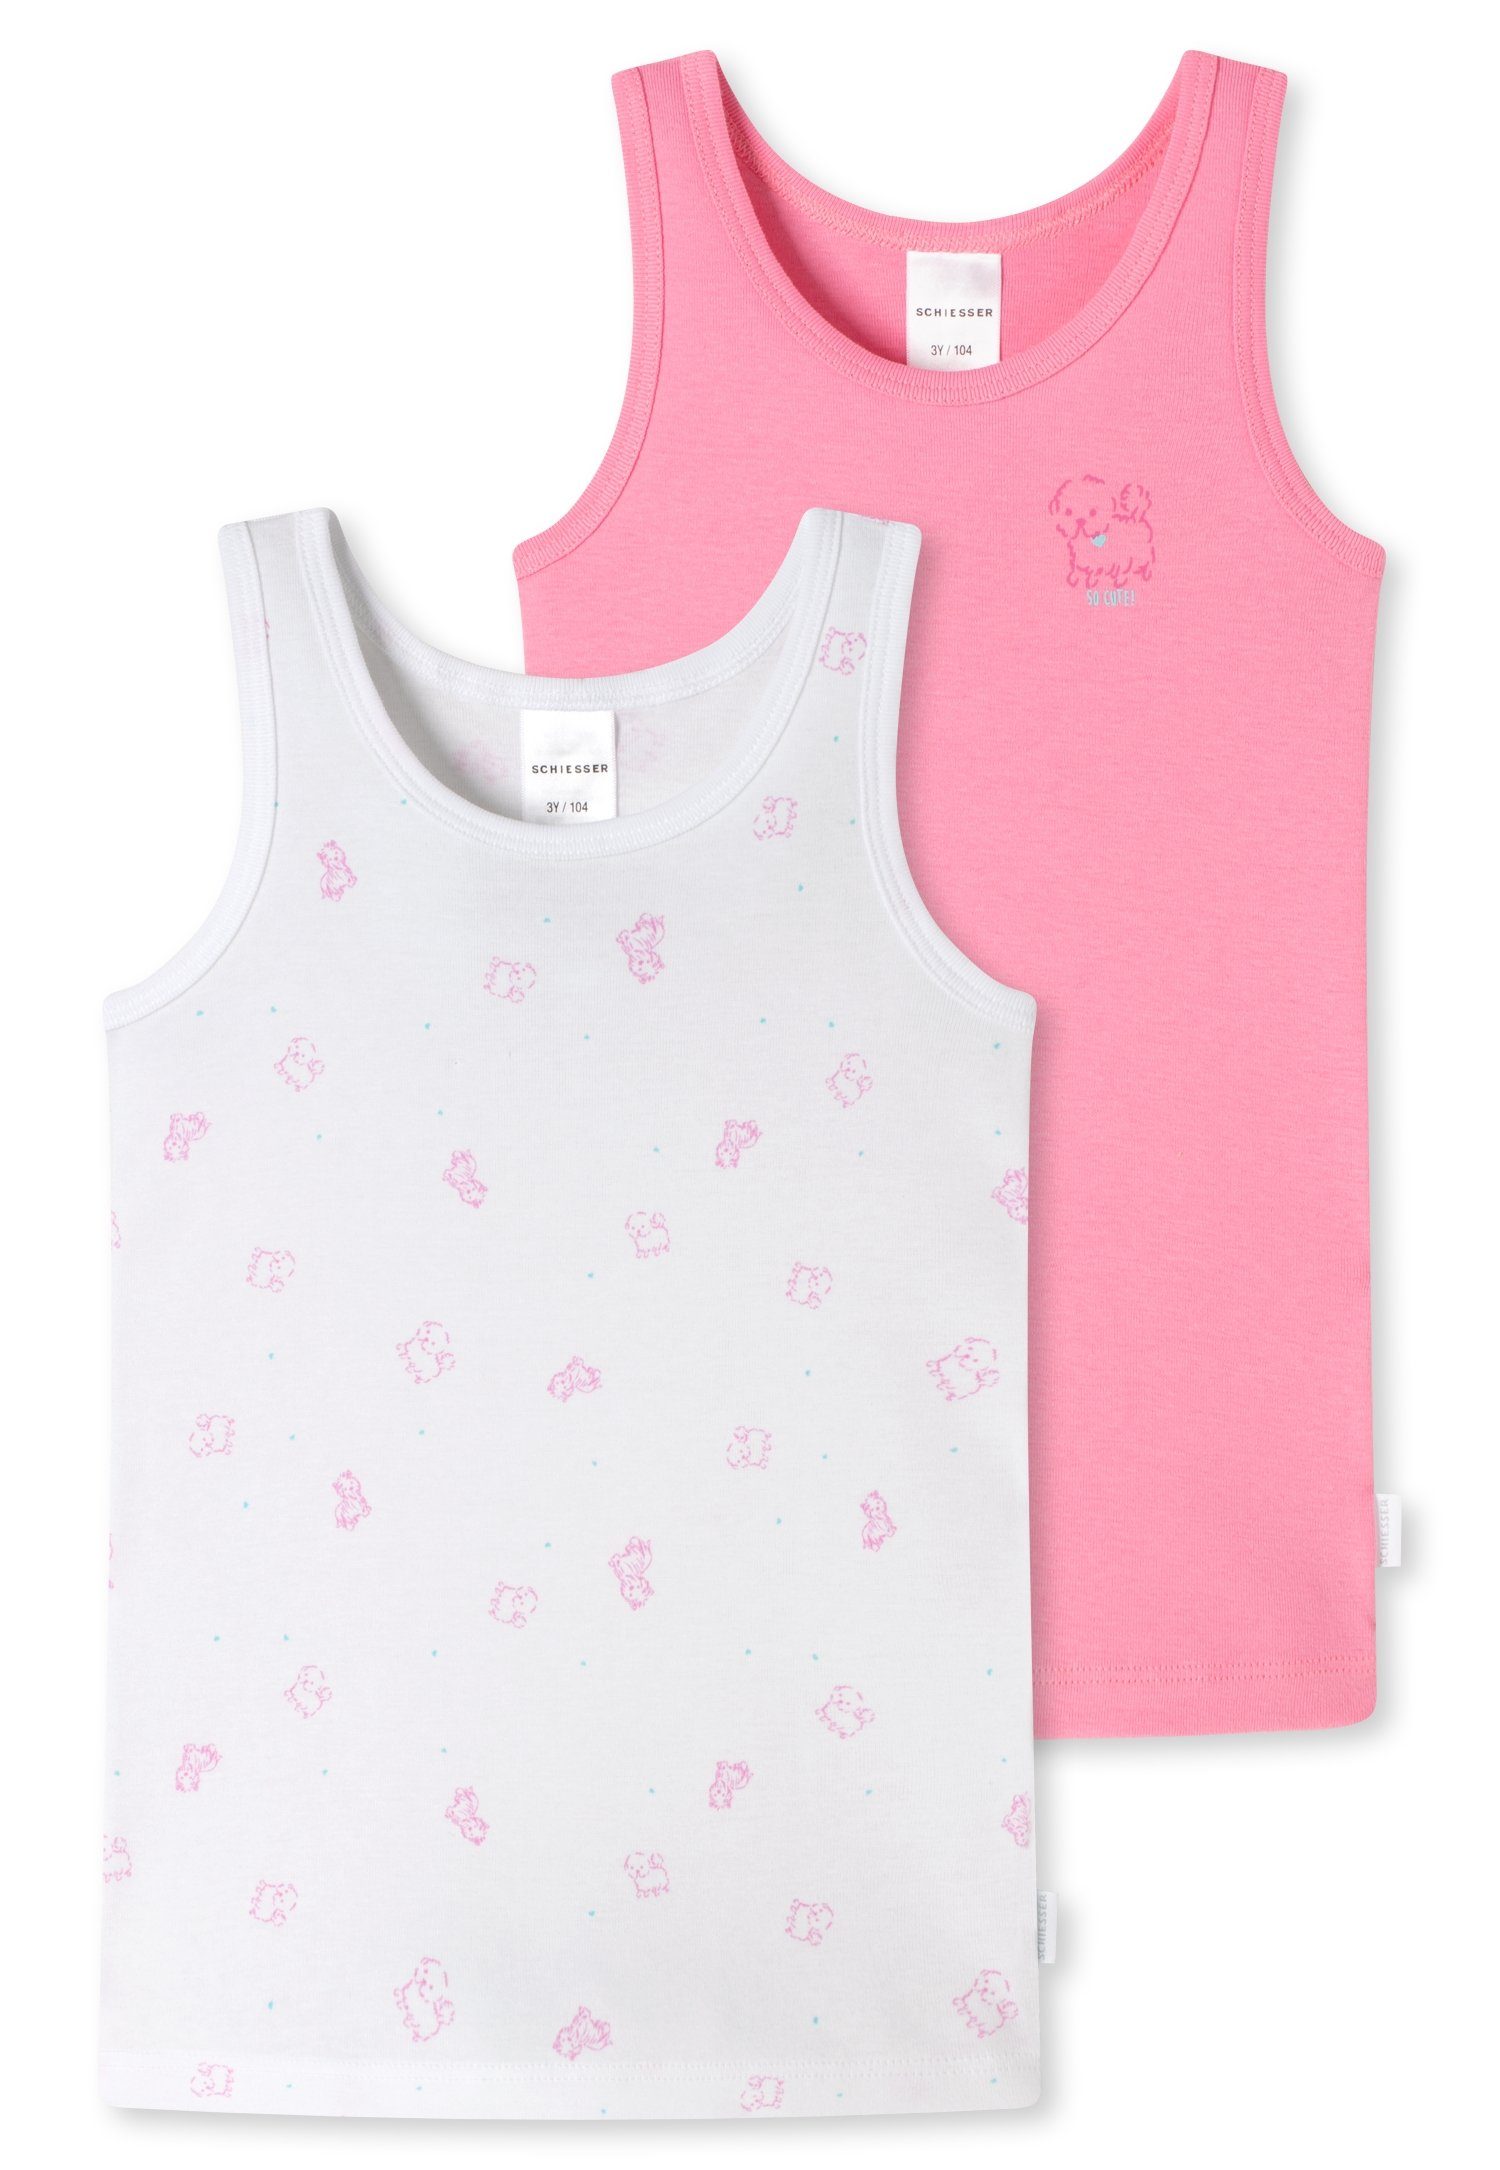 Schiesser Unterhemd (2er-Pack) mit Hunde-Motiv rosa weiß